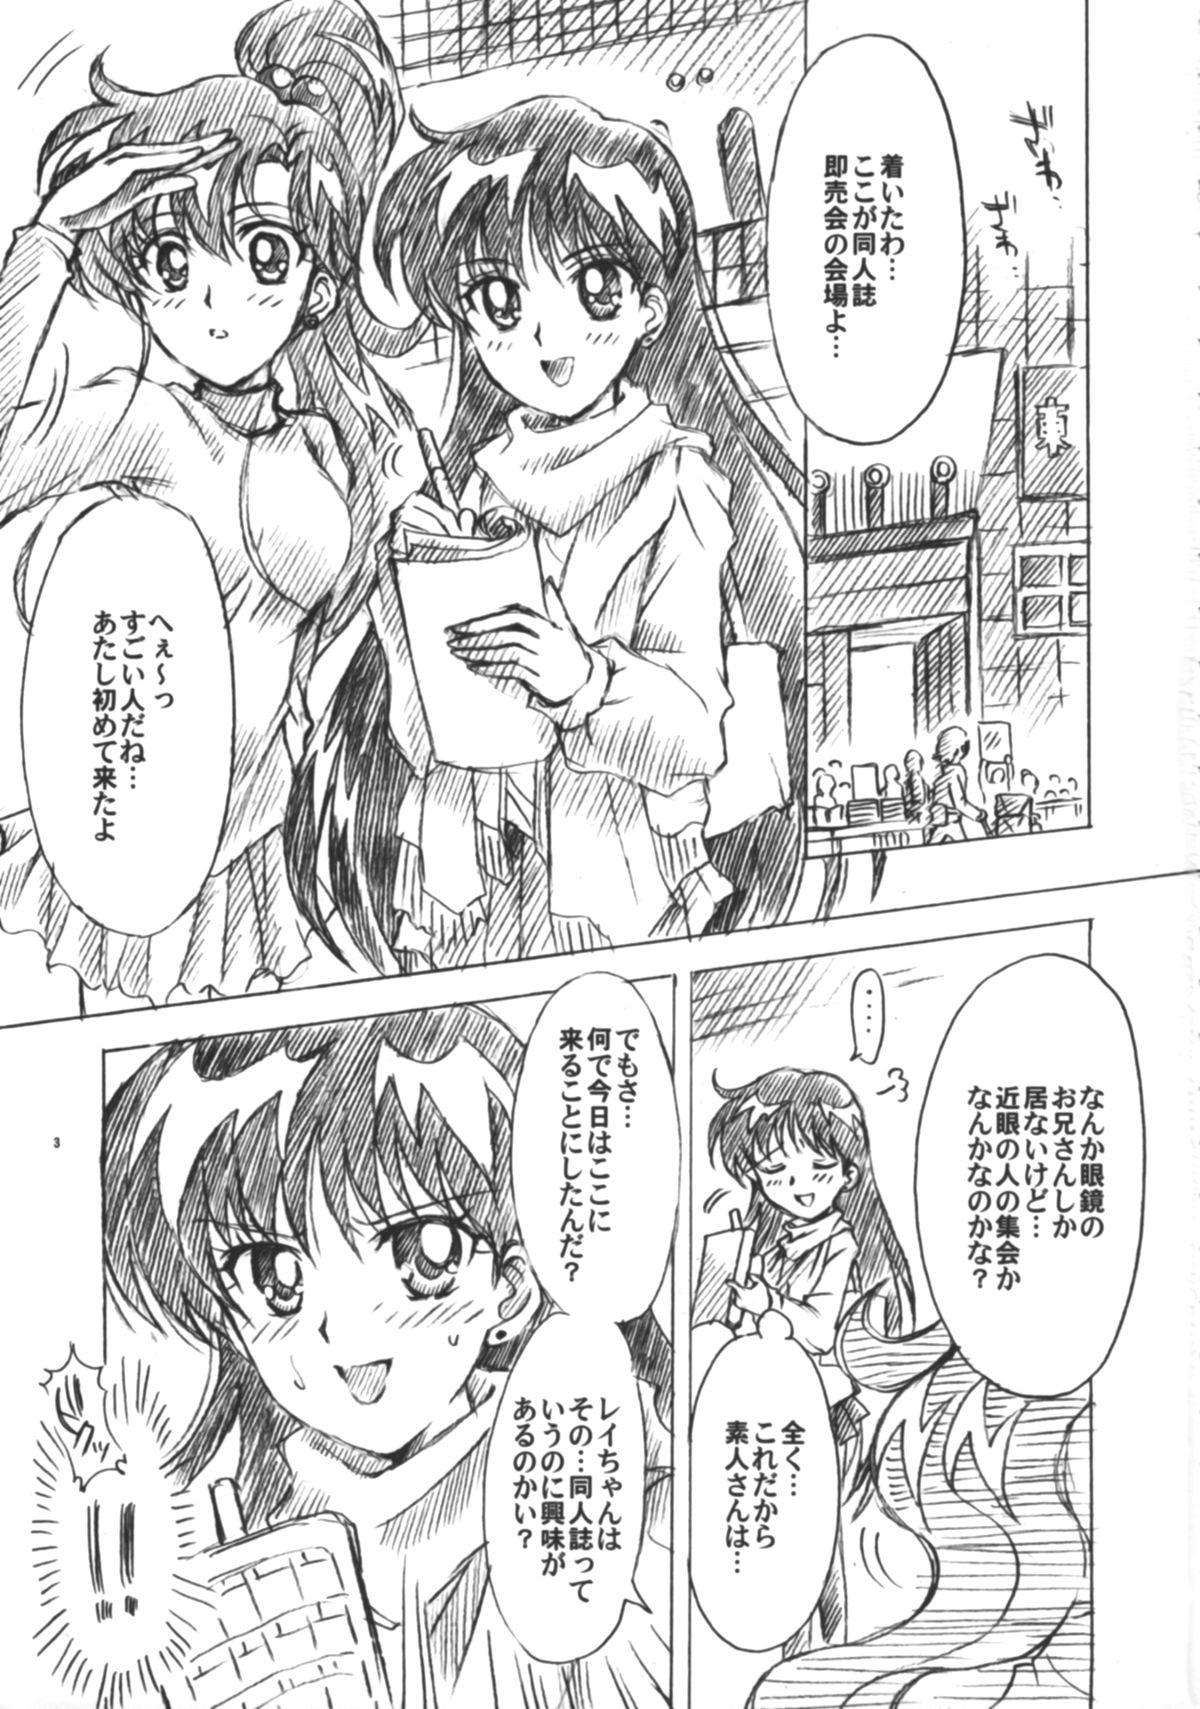 Shesafreak Boku no Kanojo wa Sailor Senshi 6 - Sailor moon Fetish - Page 4